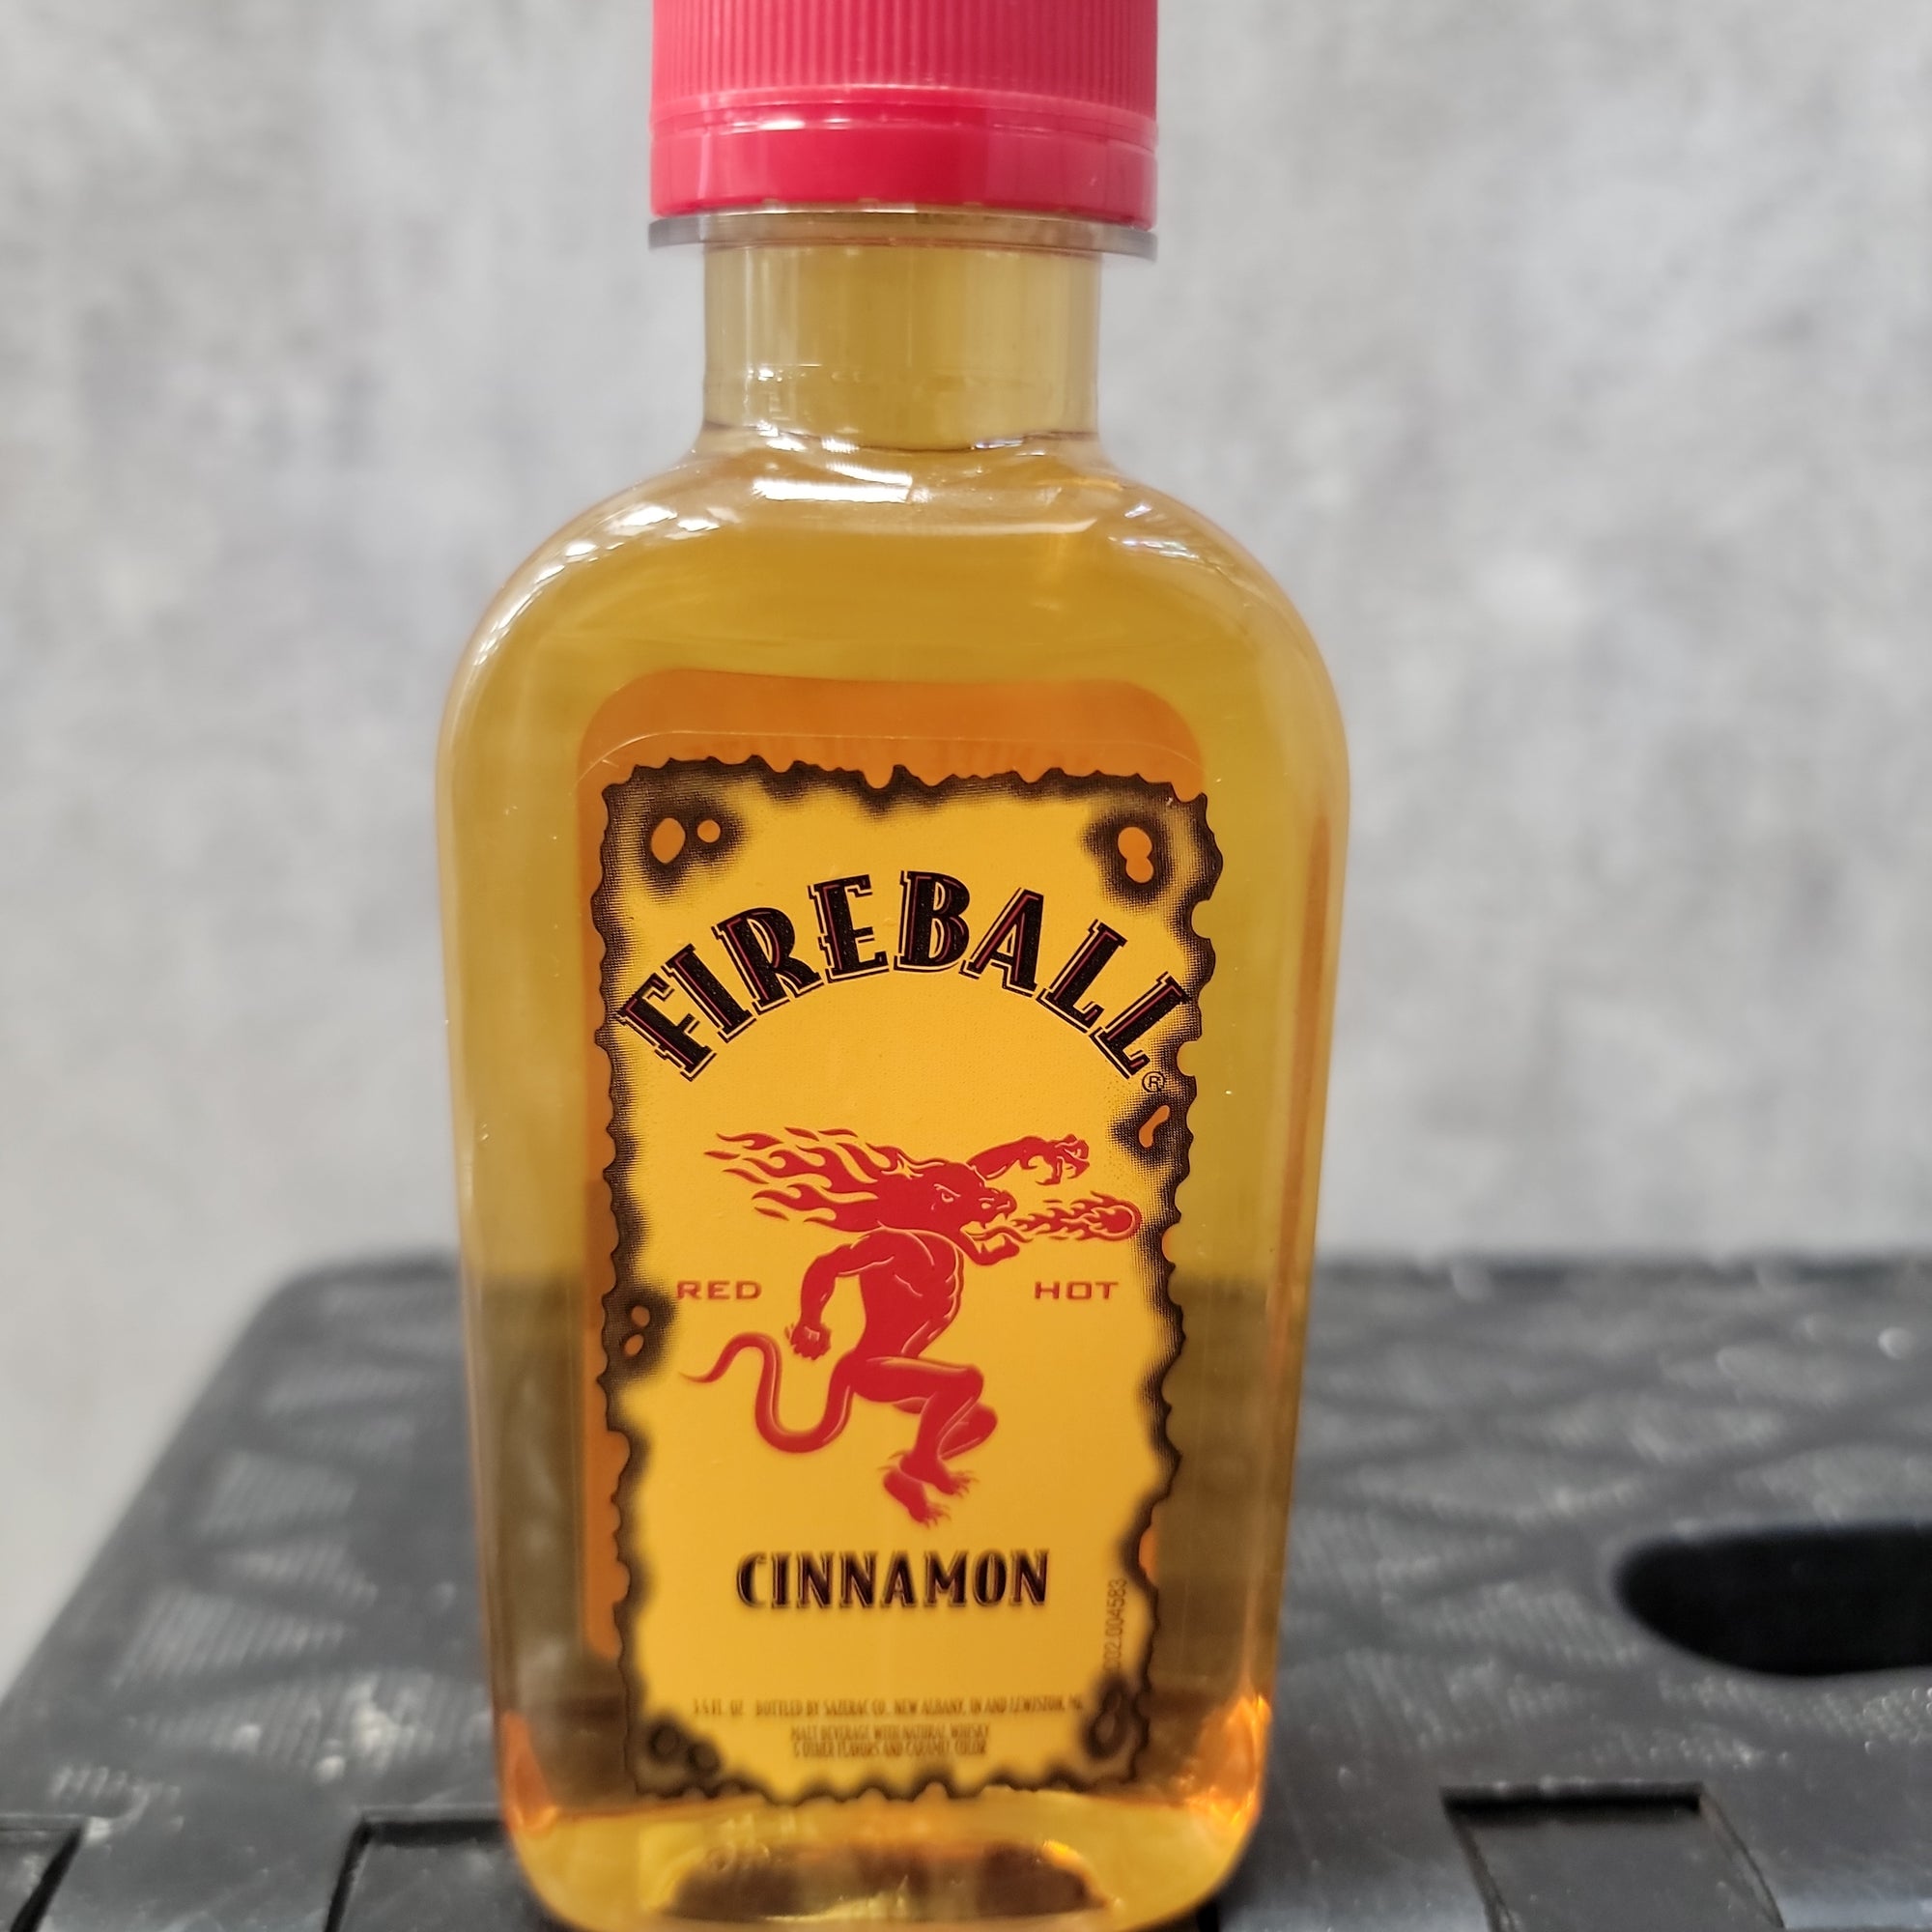 Fireball cinnamon 3.4 Fl oz